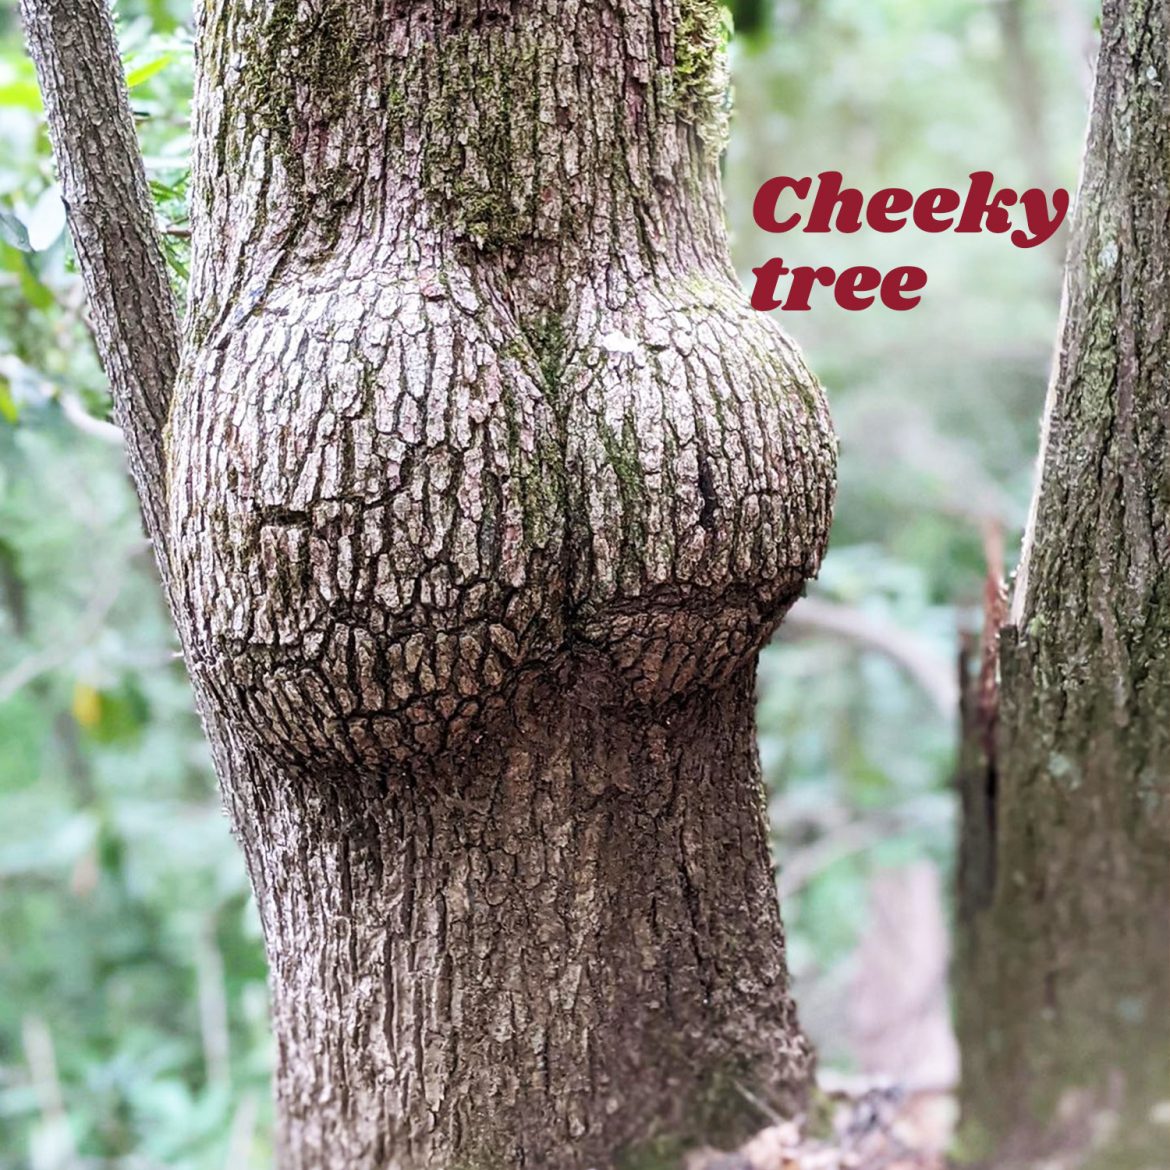 Cheeky tree